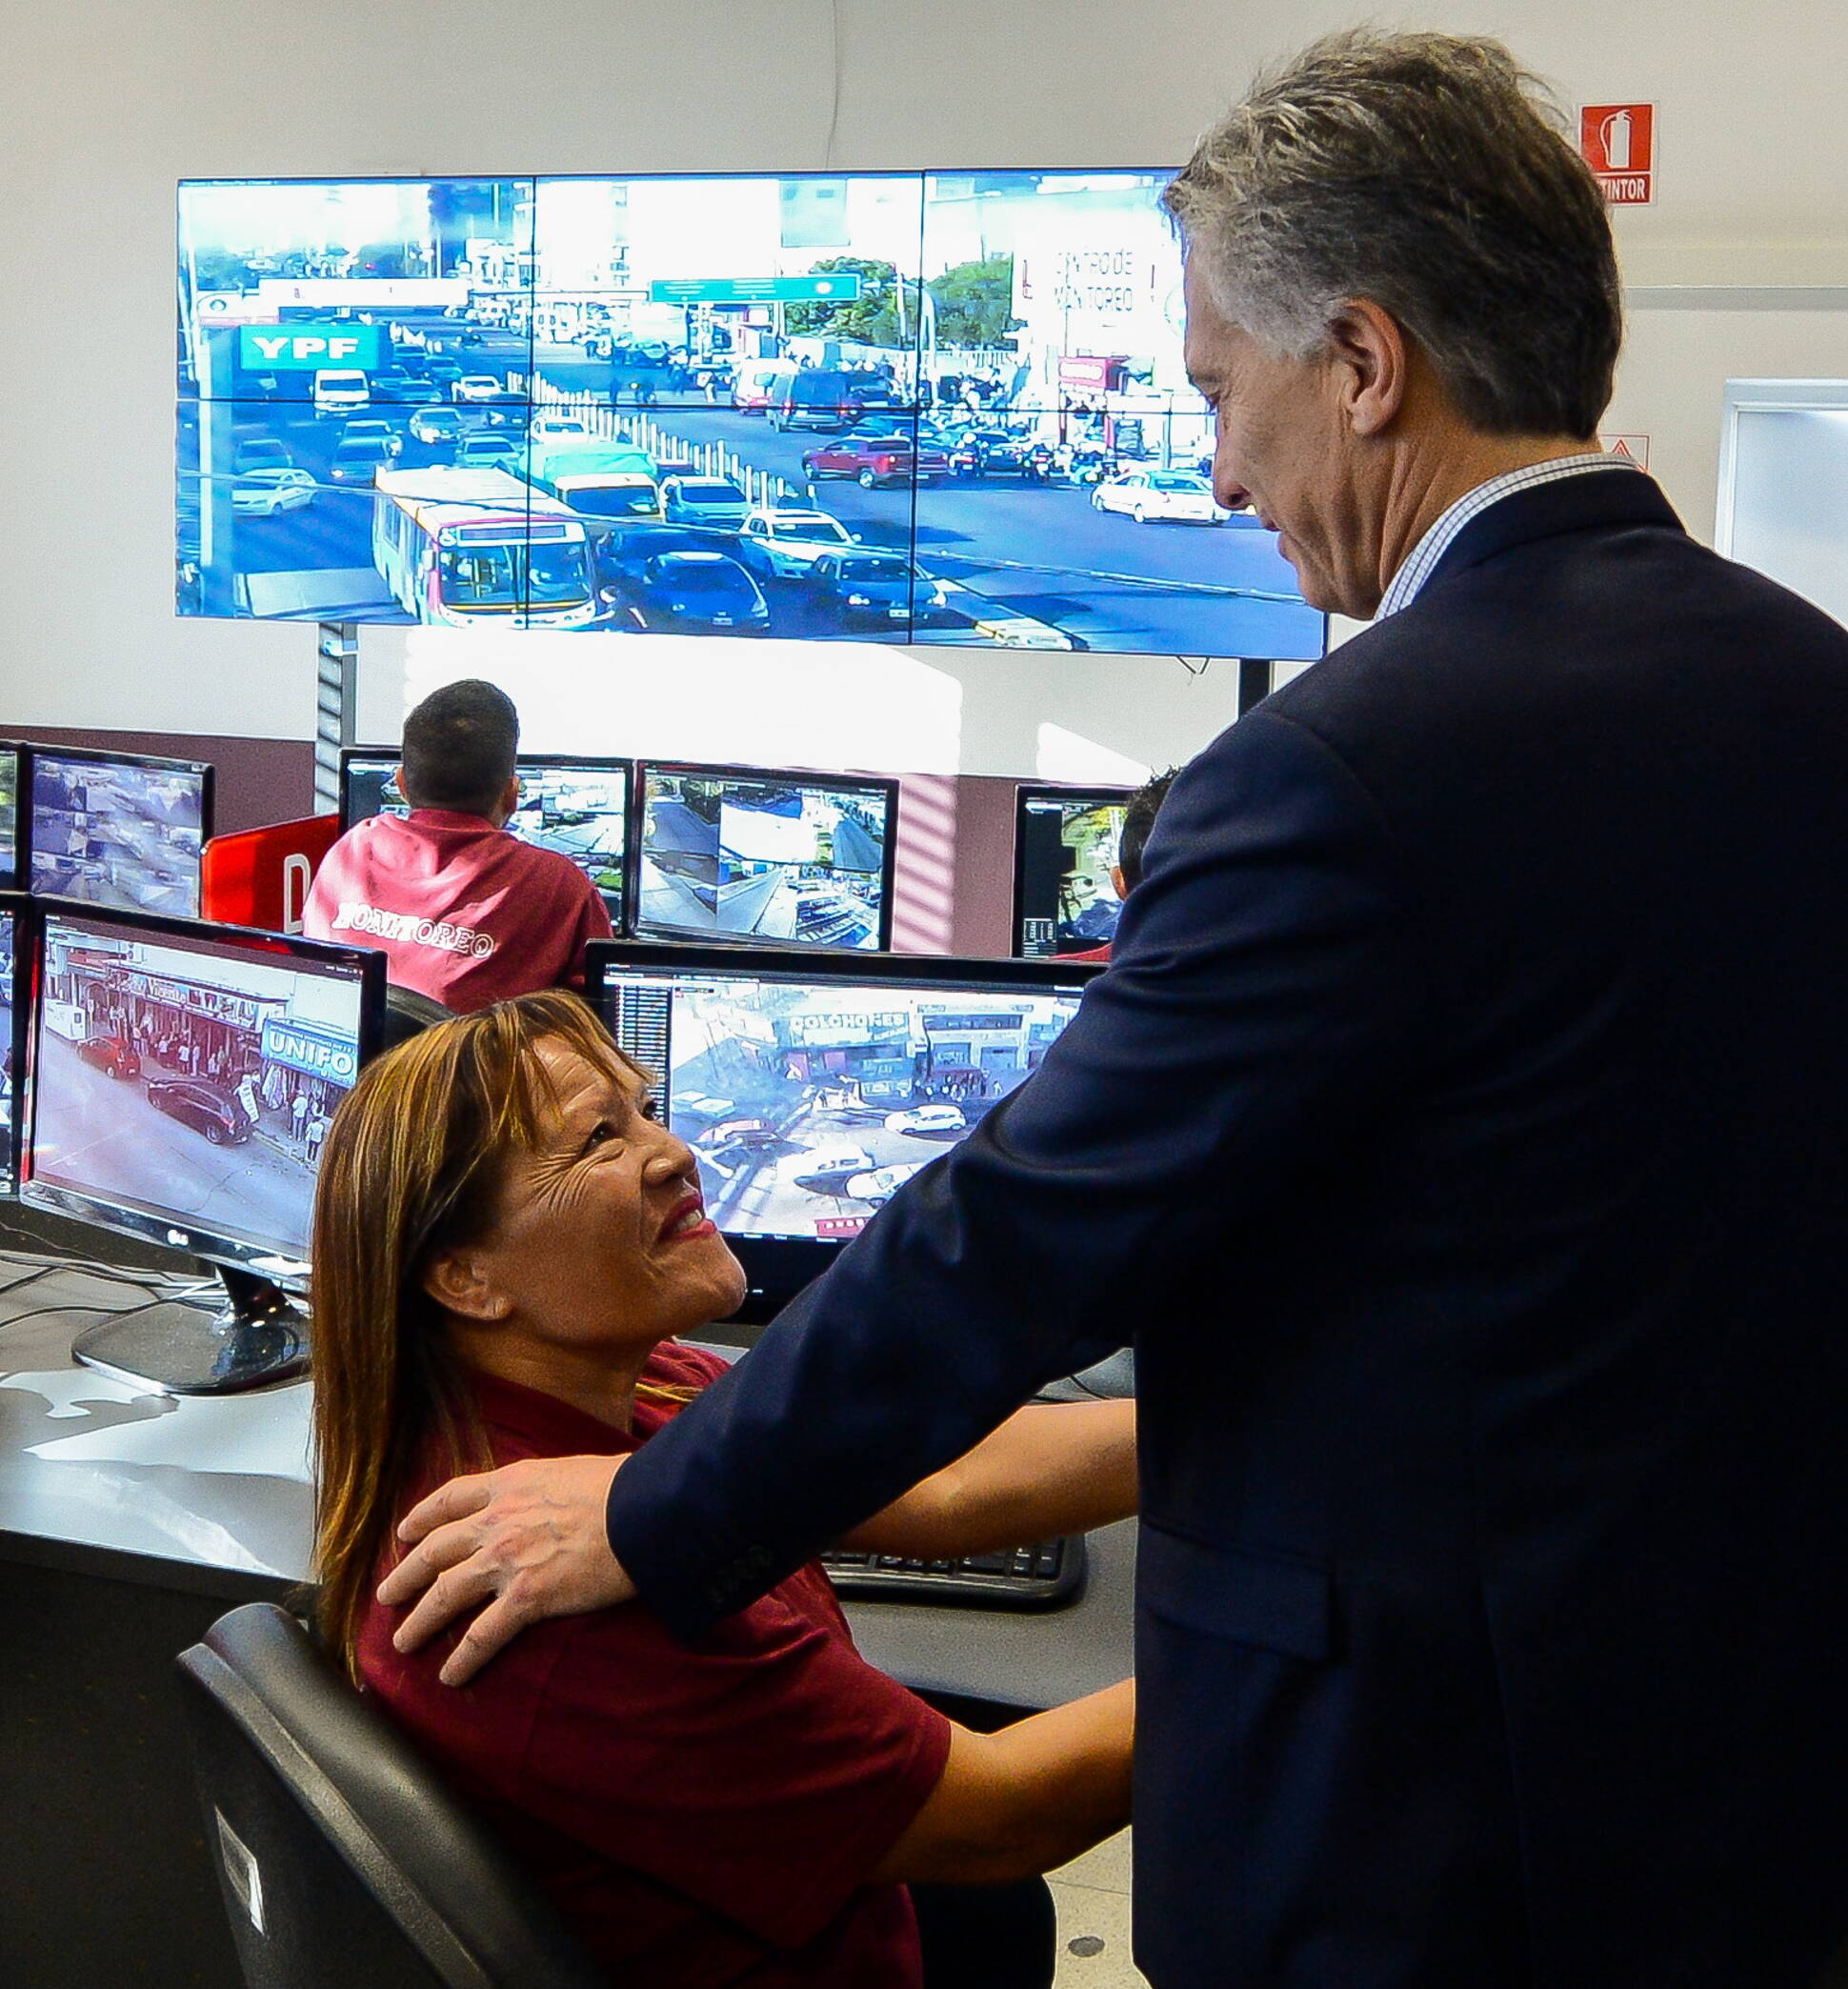 El presidente Macri recorrió un centro del servicio SAME Provincia en el municipio de Lanús